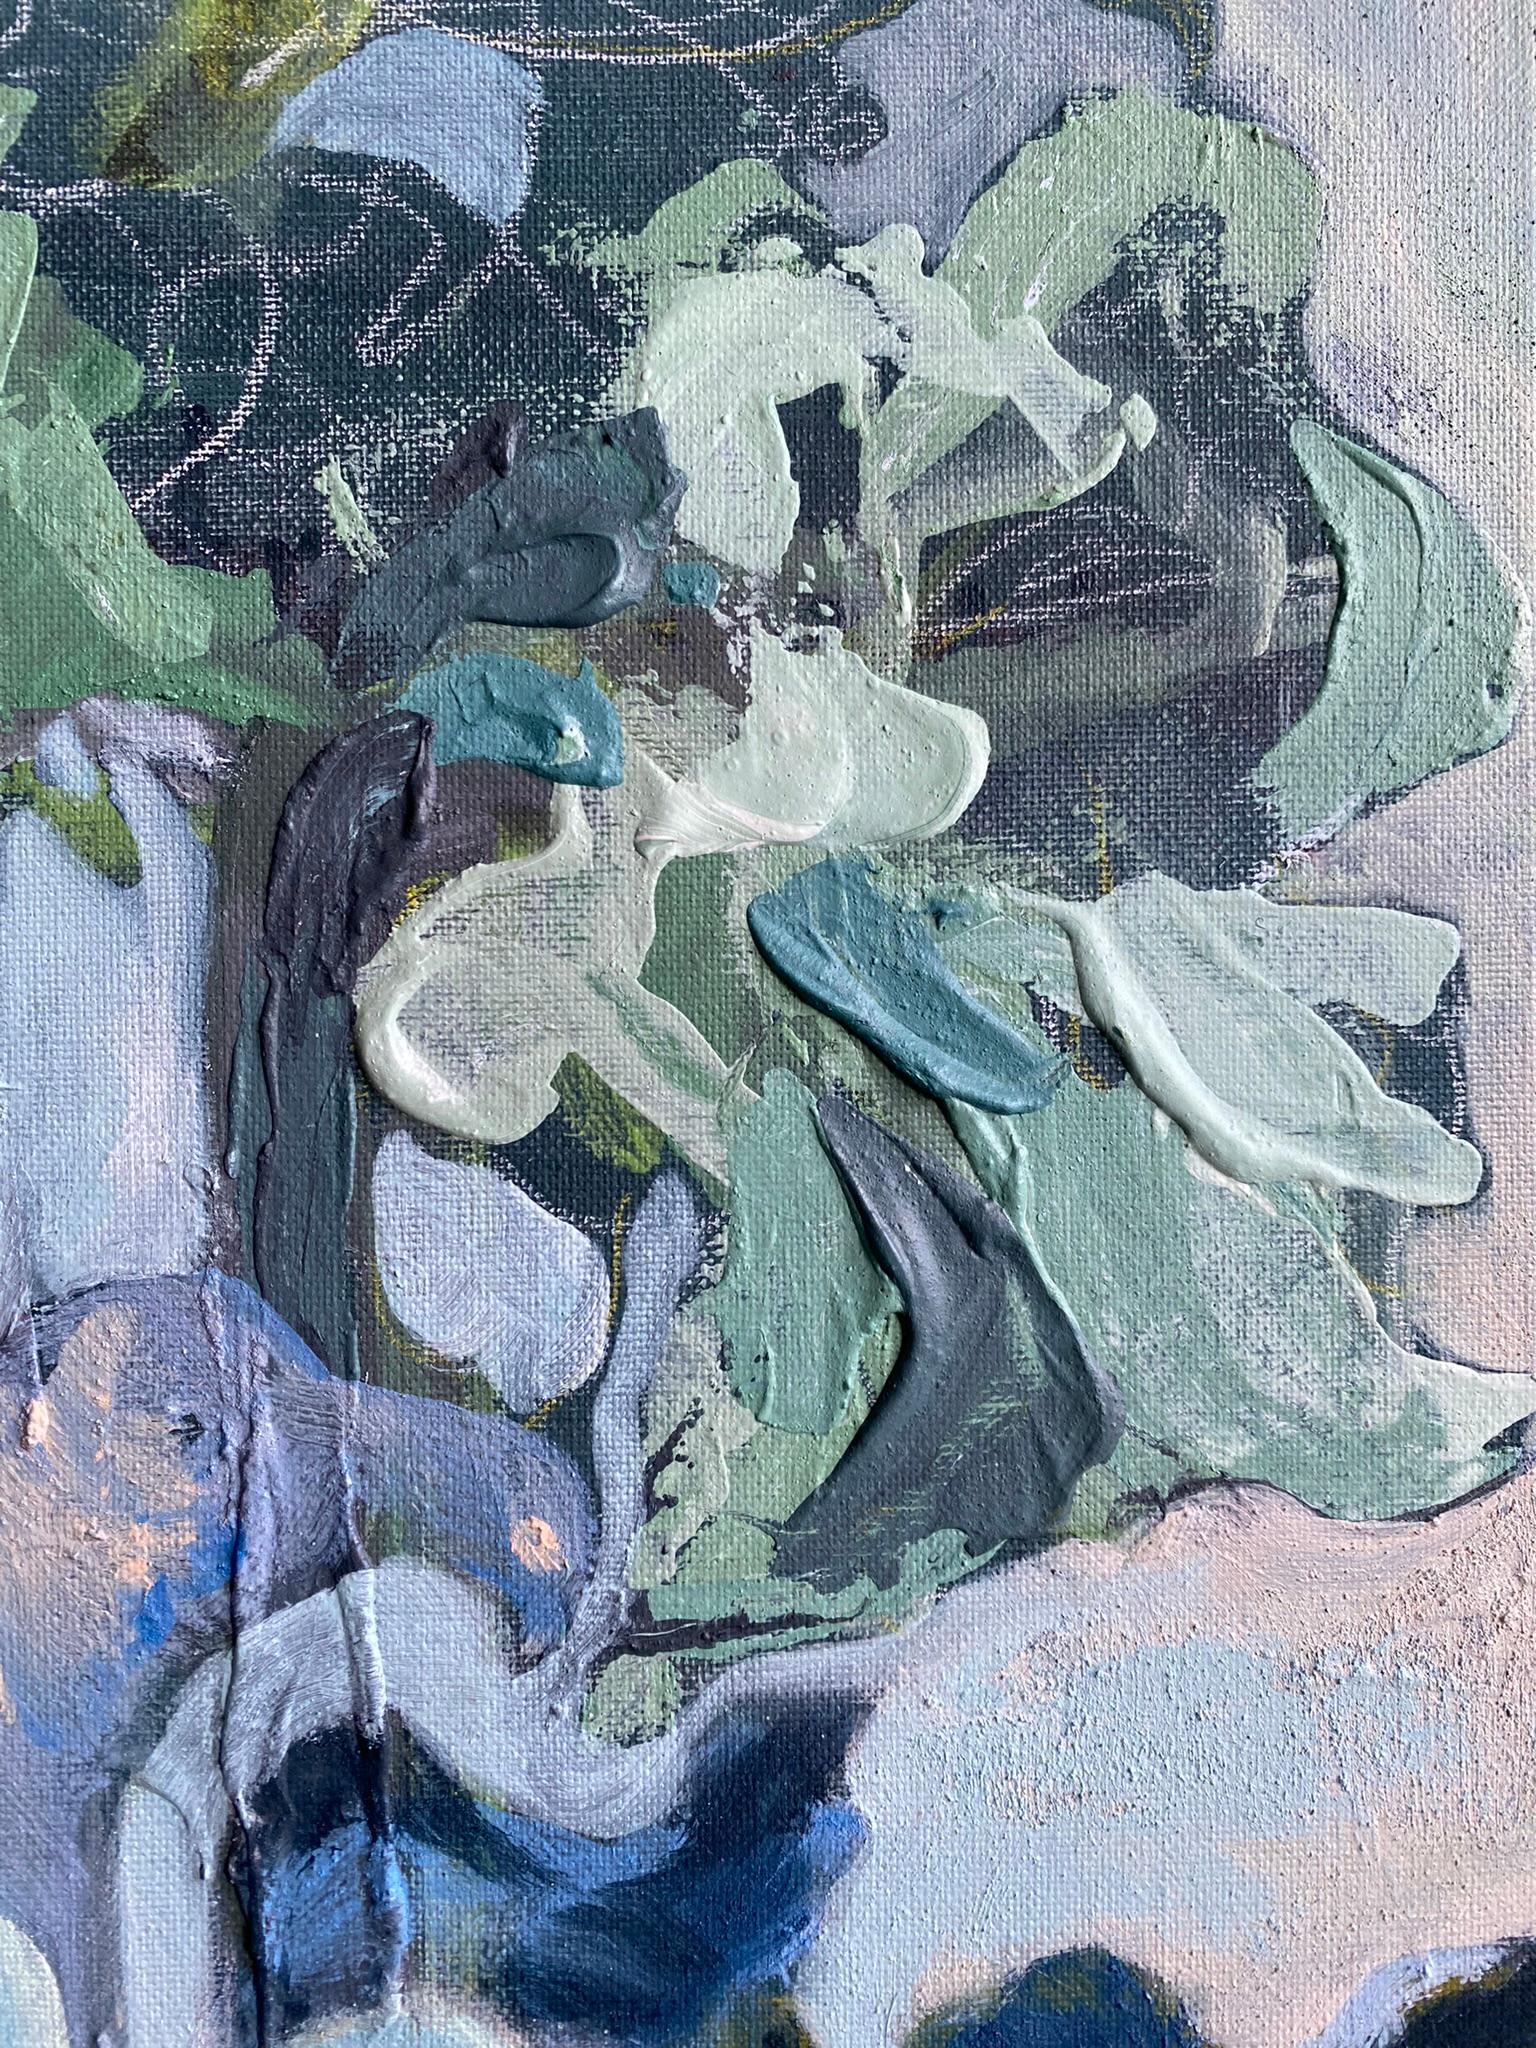 Original-Winter Bloom-UK Ausgezeichnete Künstlerin-Abstract Expression-AusstellungKollektion (Abstrakter Expressionismus), Painting, von Shizico Yi